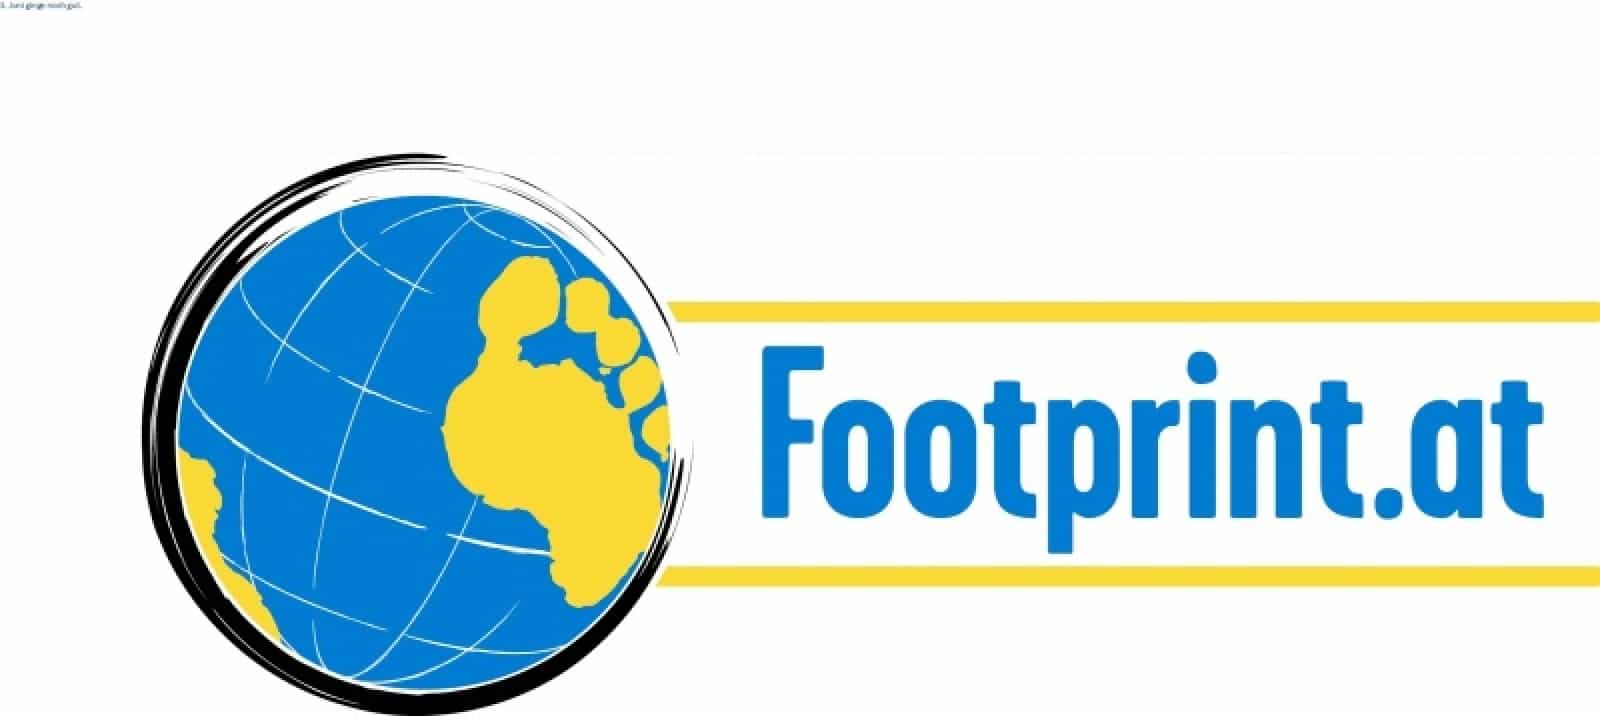 footprint.at, © by footprint.at